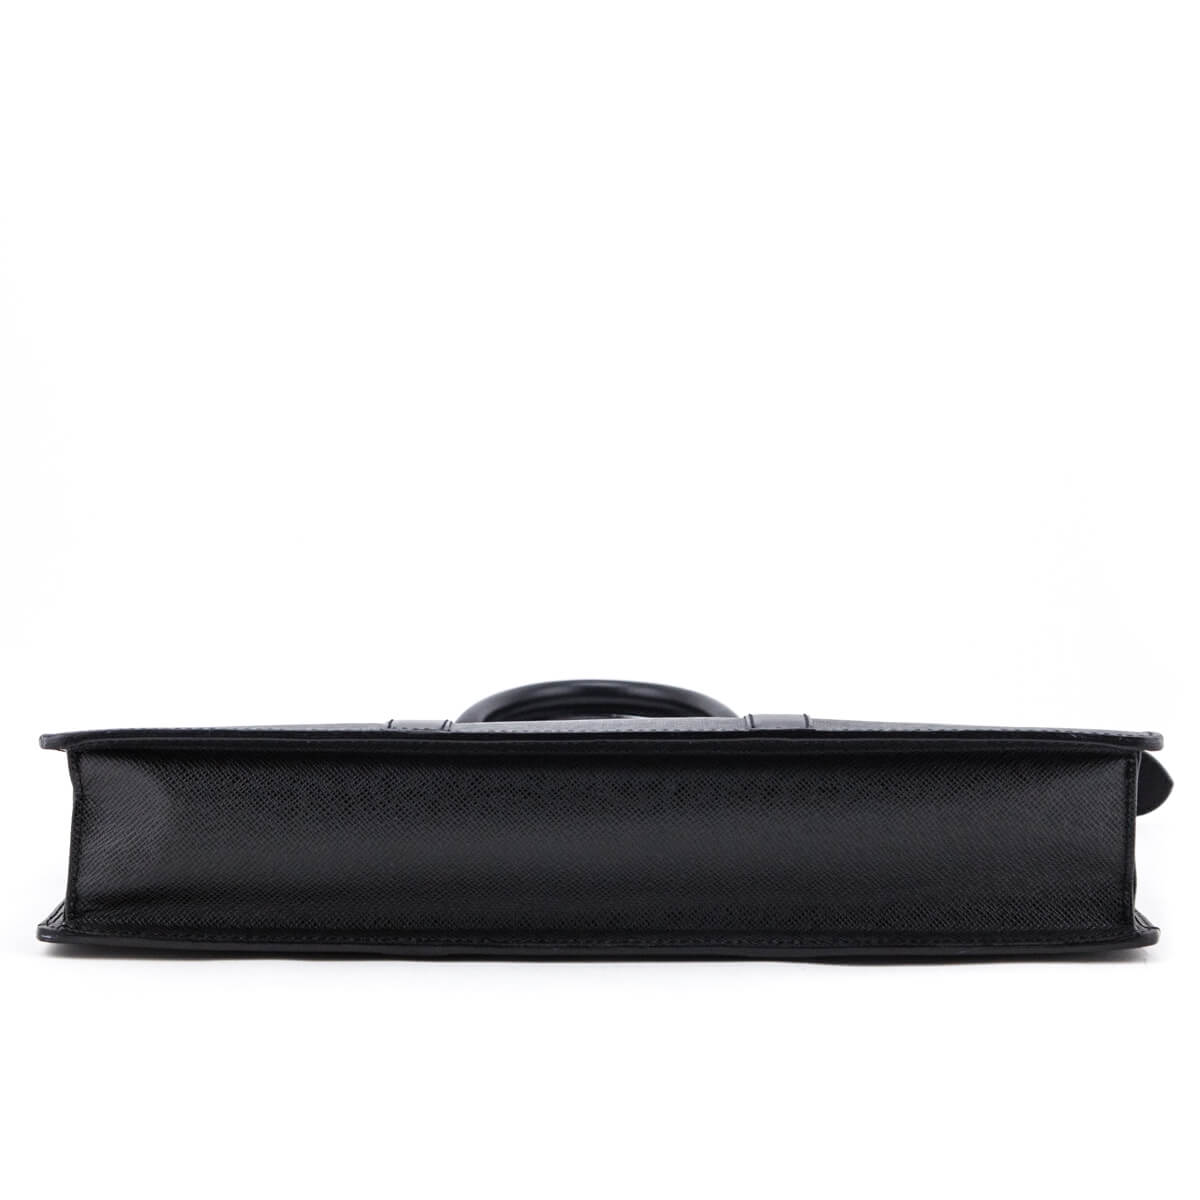 Louis Vuitton Taiga Lozan Briefcase